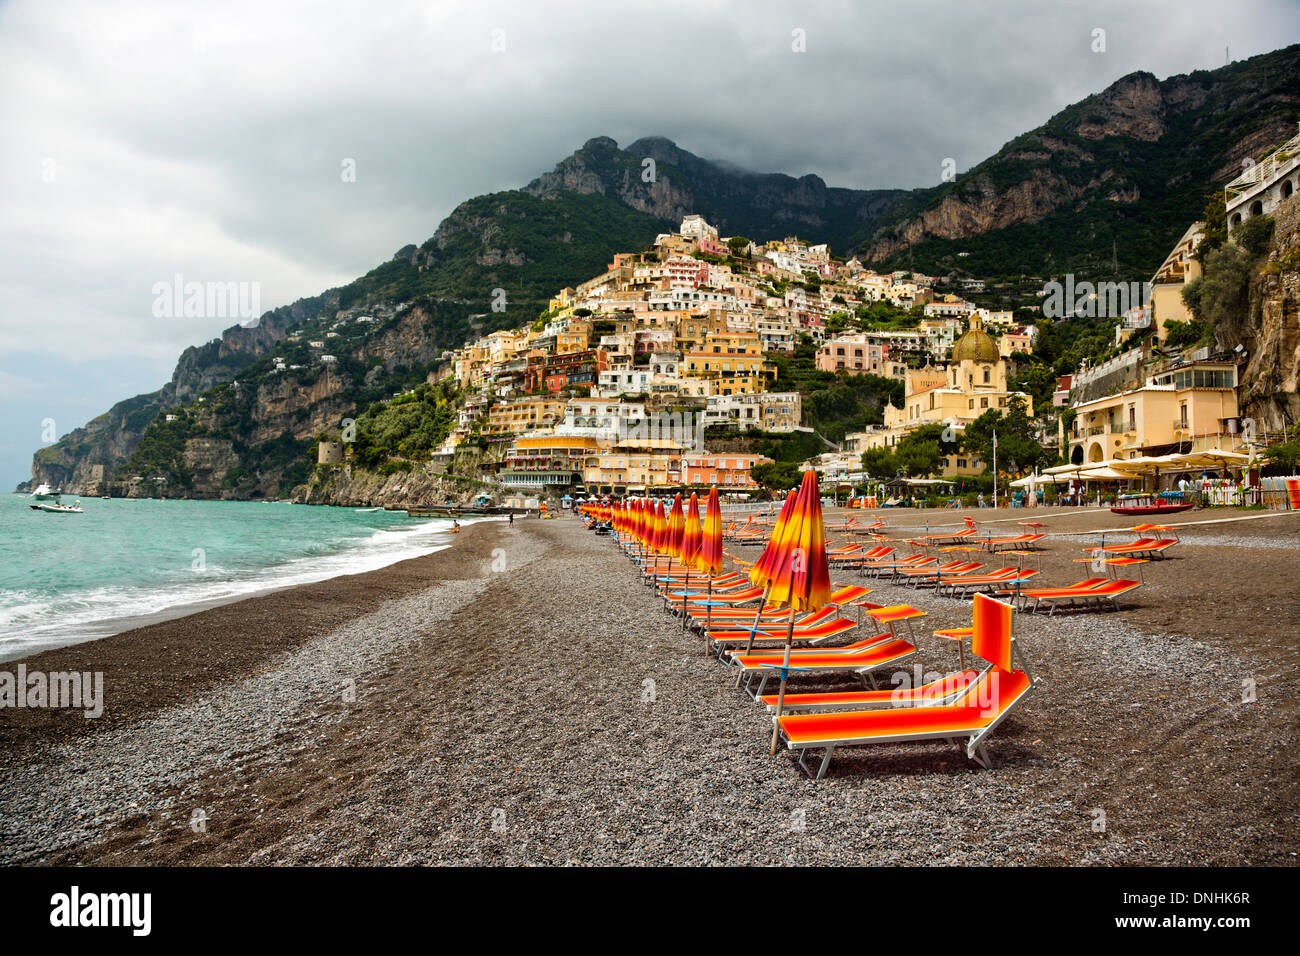 Sedie a sdraio sulla spiaggia, Positano, Costiera Amalfitana, Campania,  Italia Foto stock - Alamy